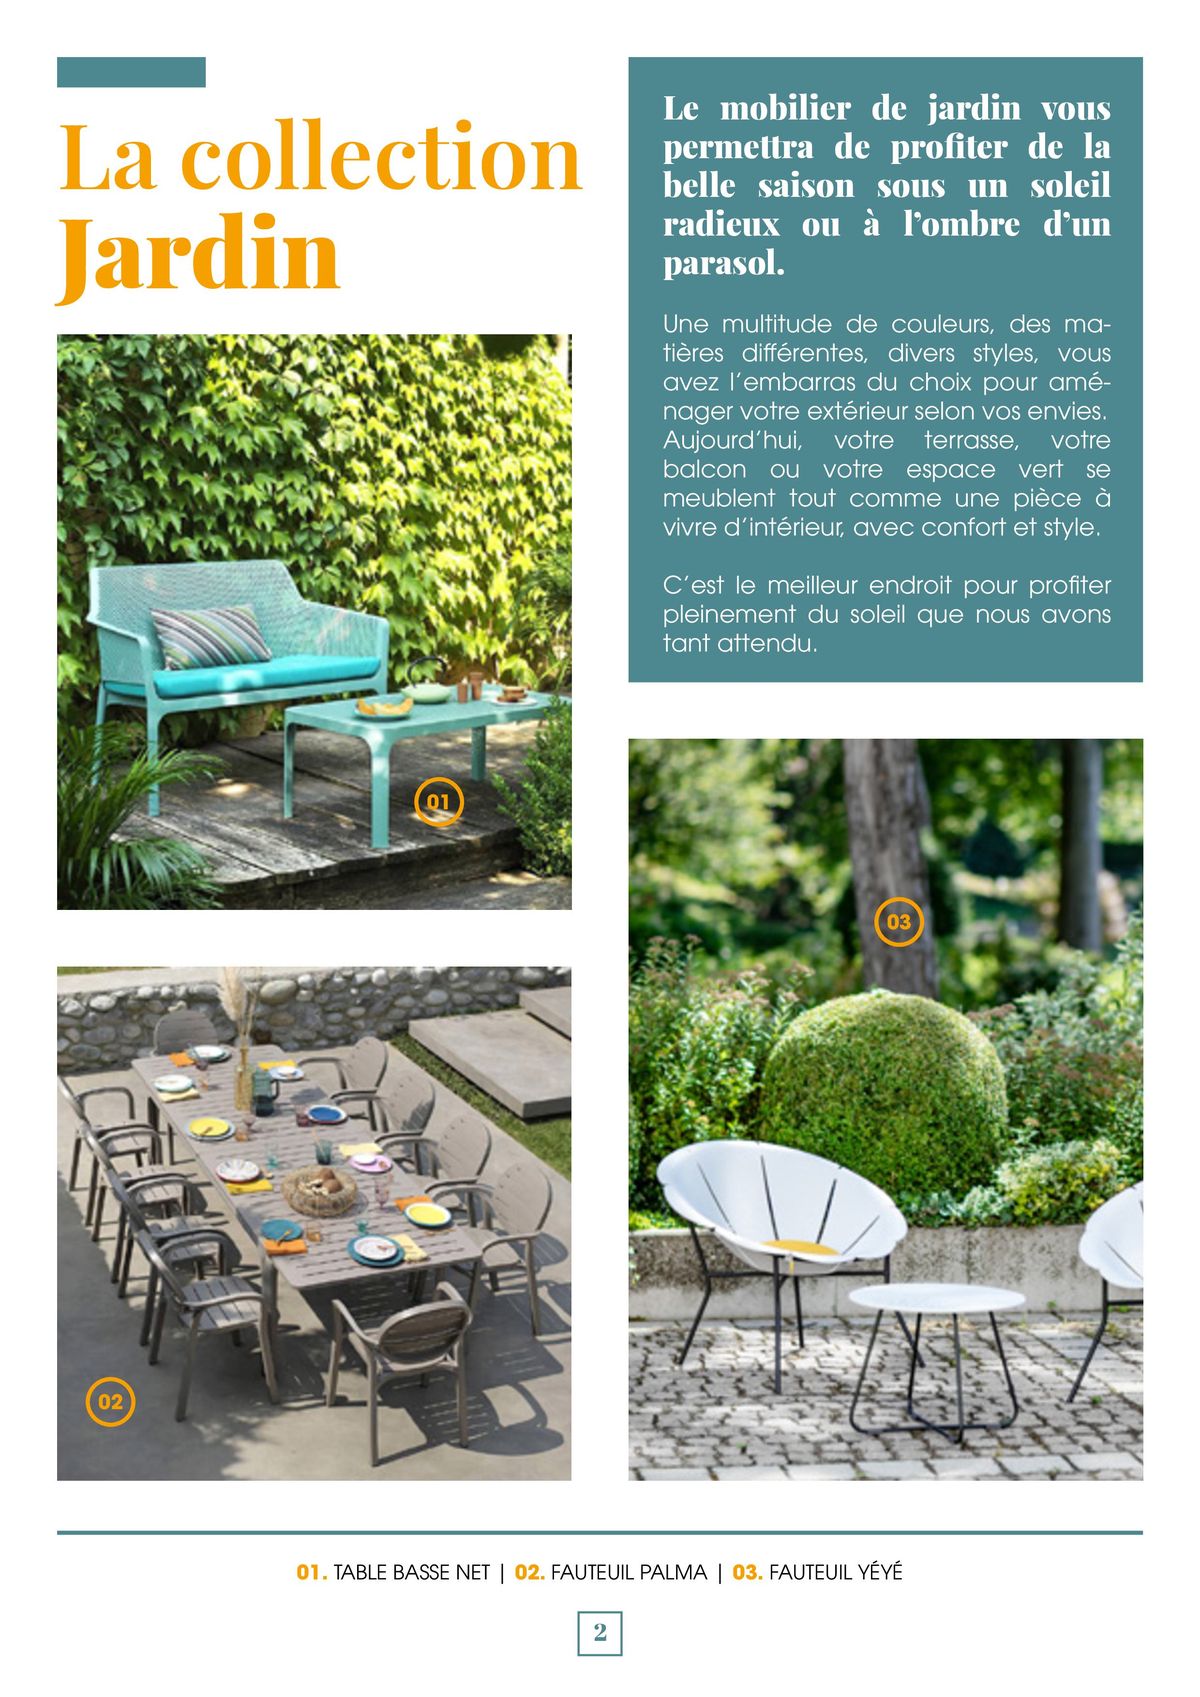 Catalogue Alliez convivialité, confort et esthétique grâce à notre mobilier d’extérieur, page 00002